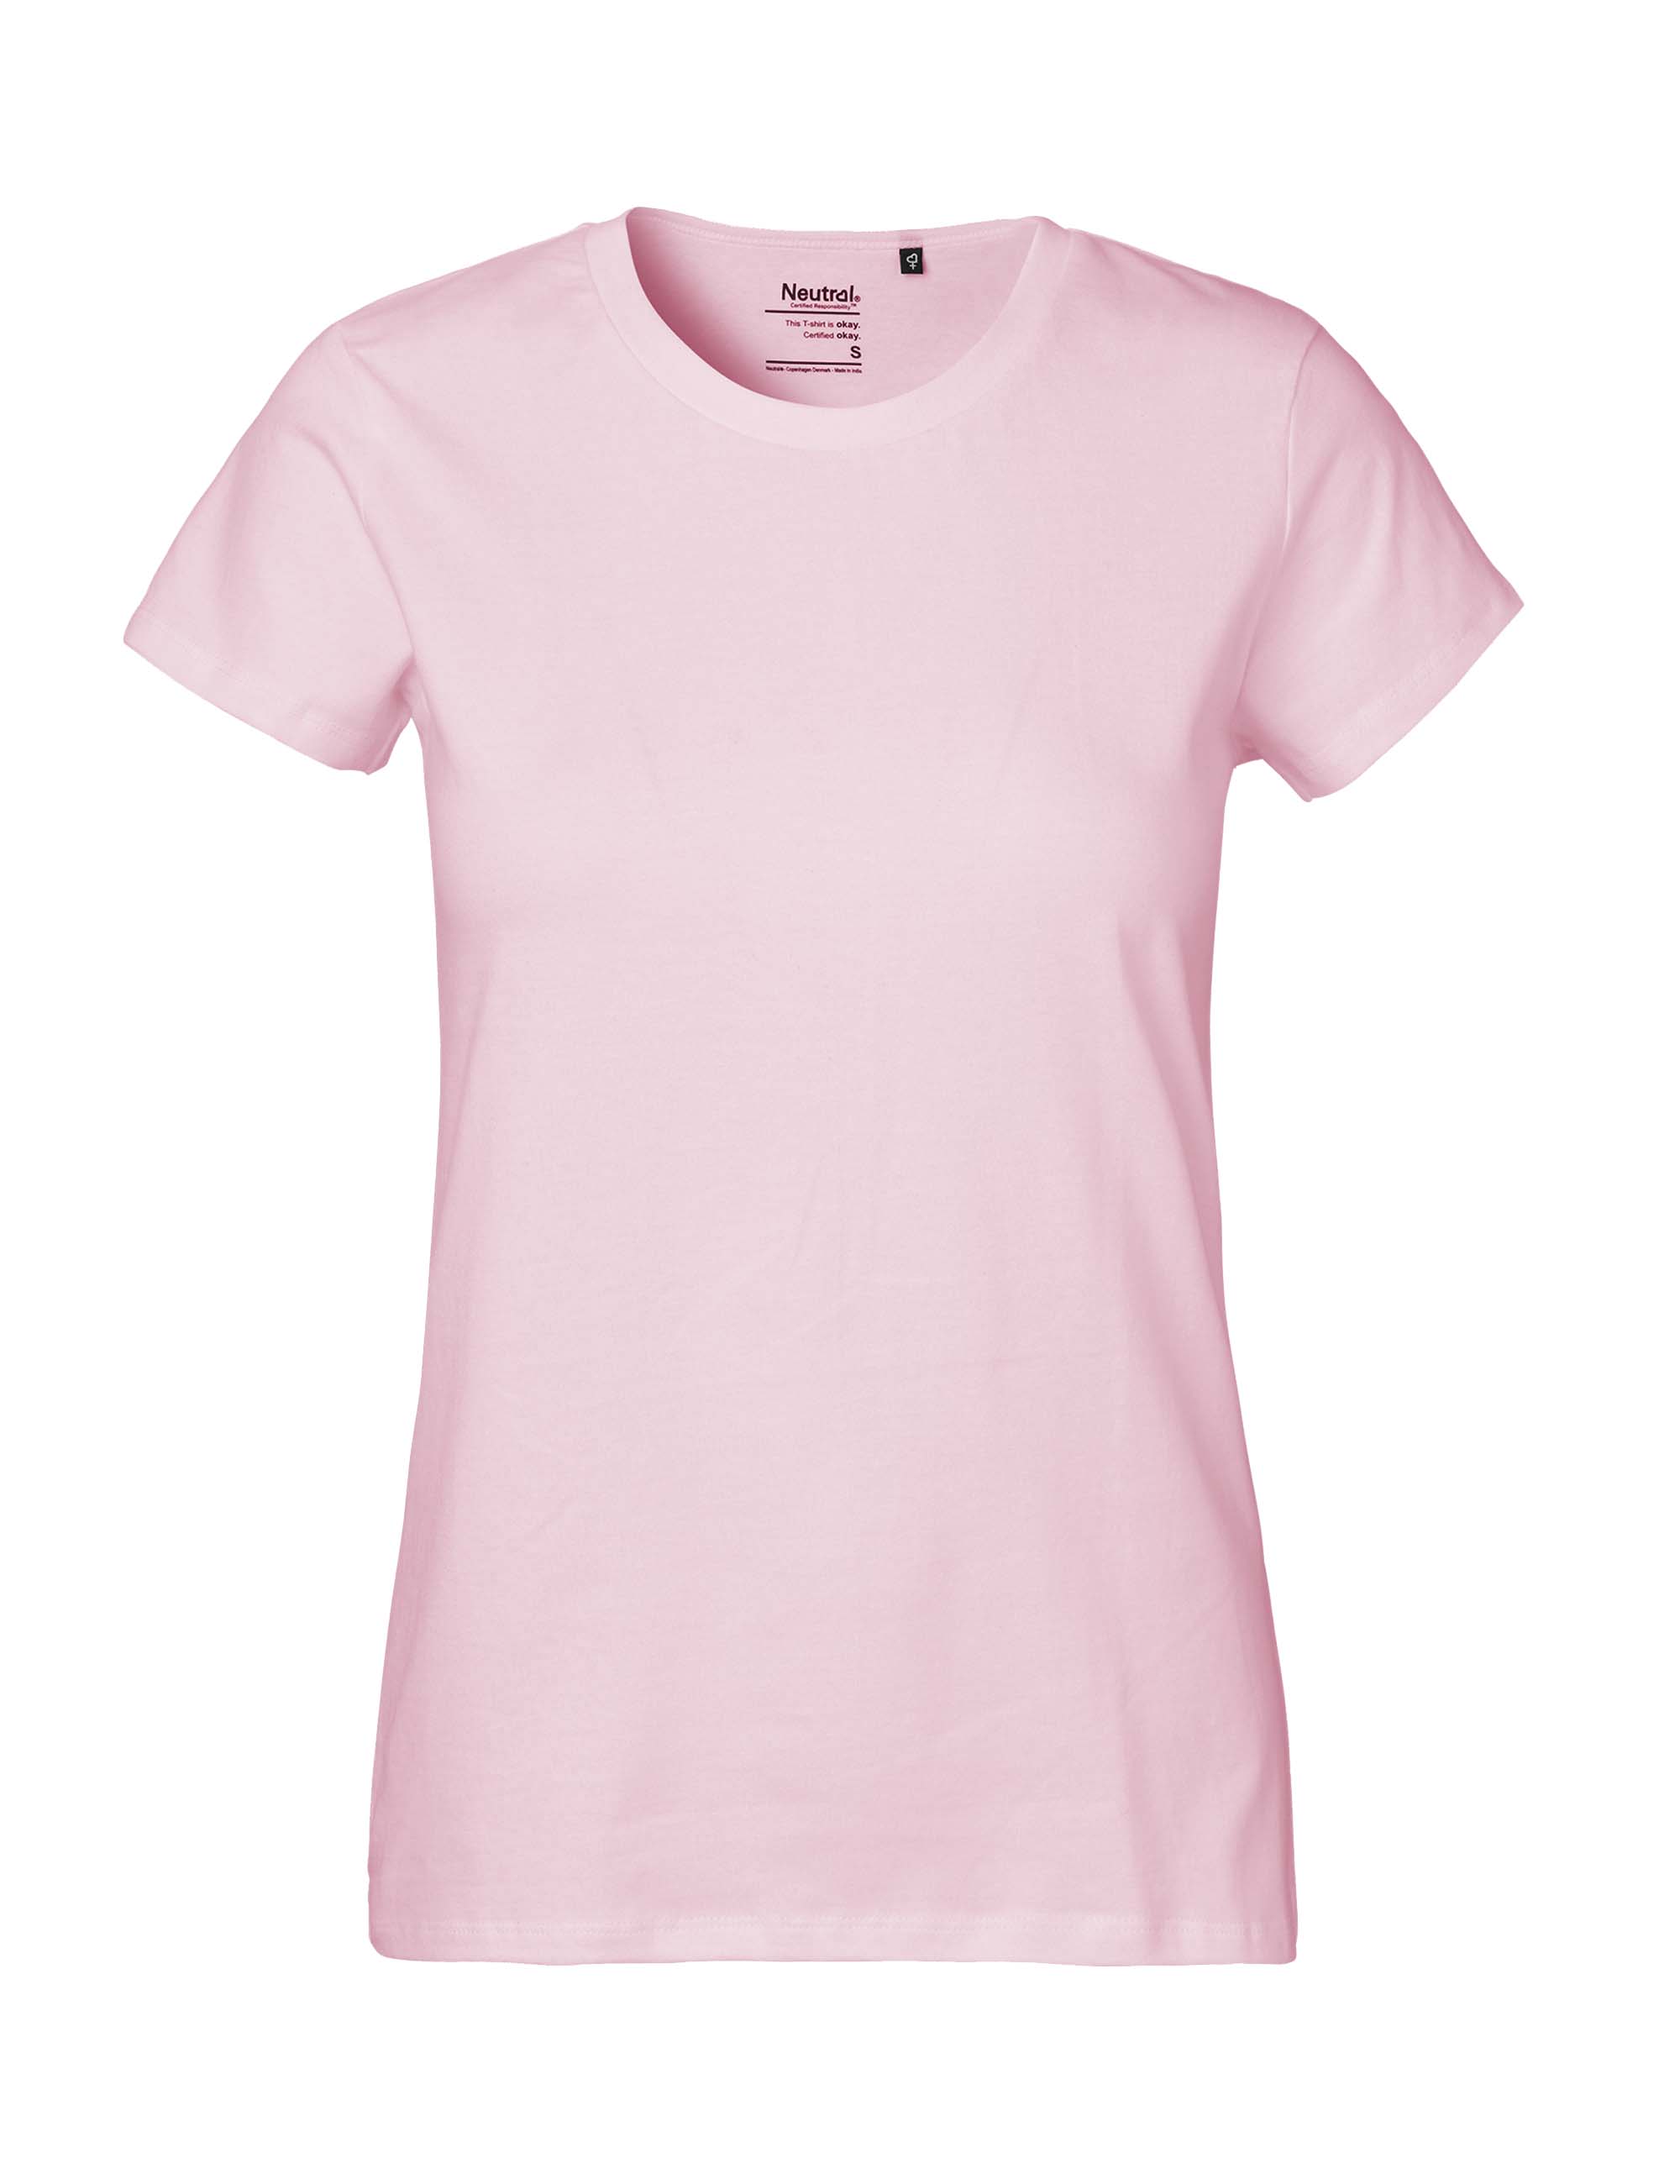 Organic Fairtrade Damen T-Shirt 185 g/m² Neutral® Light Pink XXL